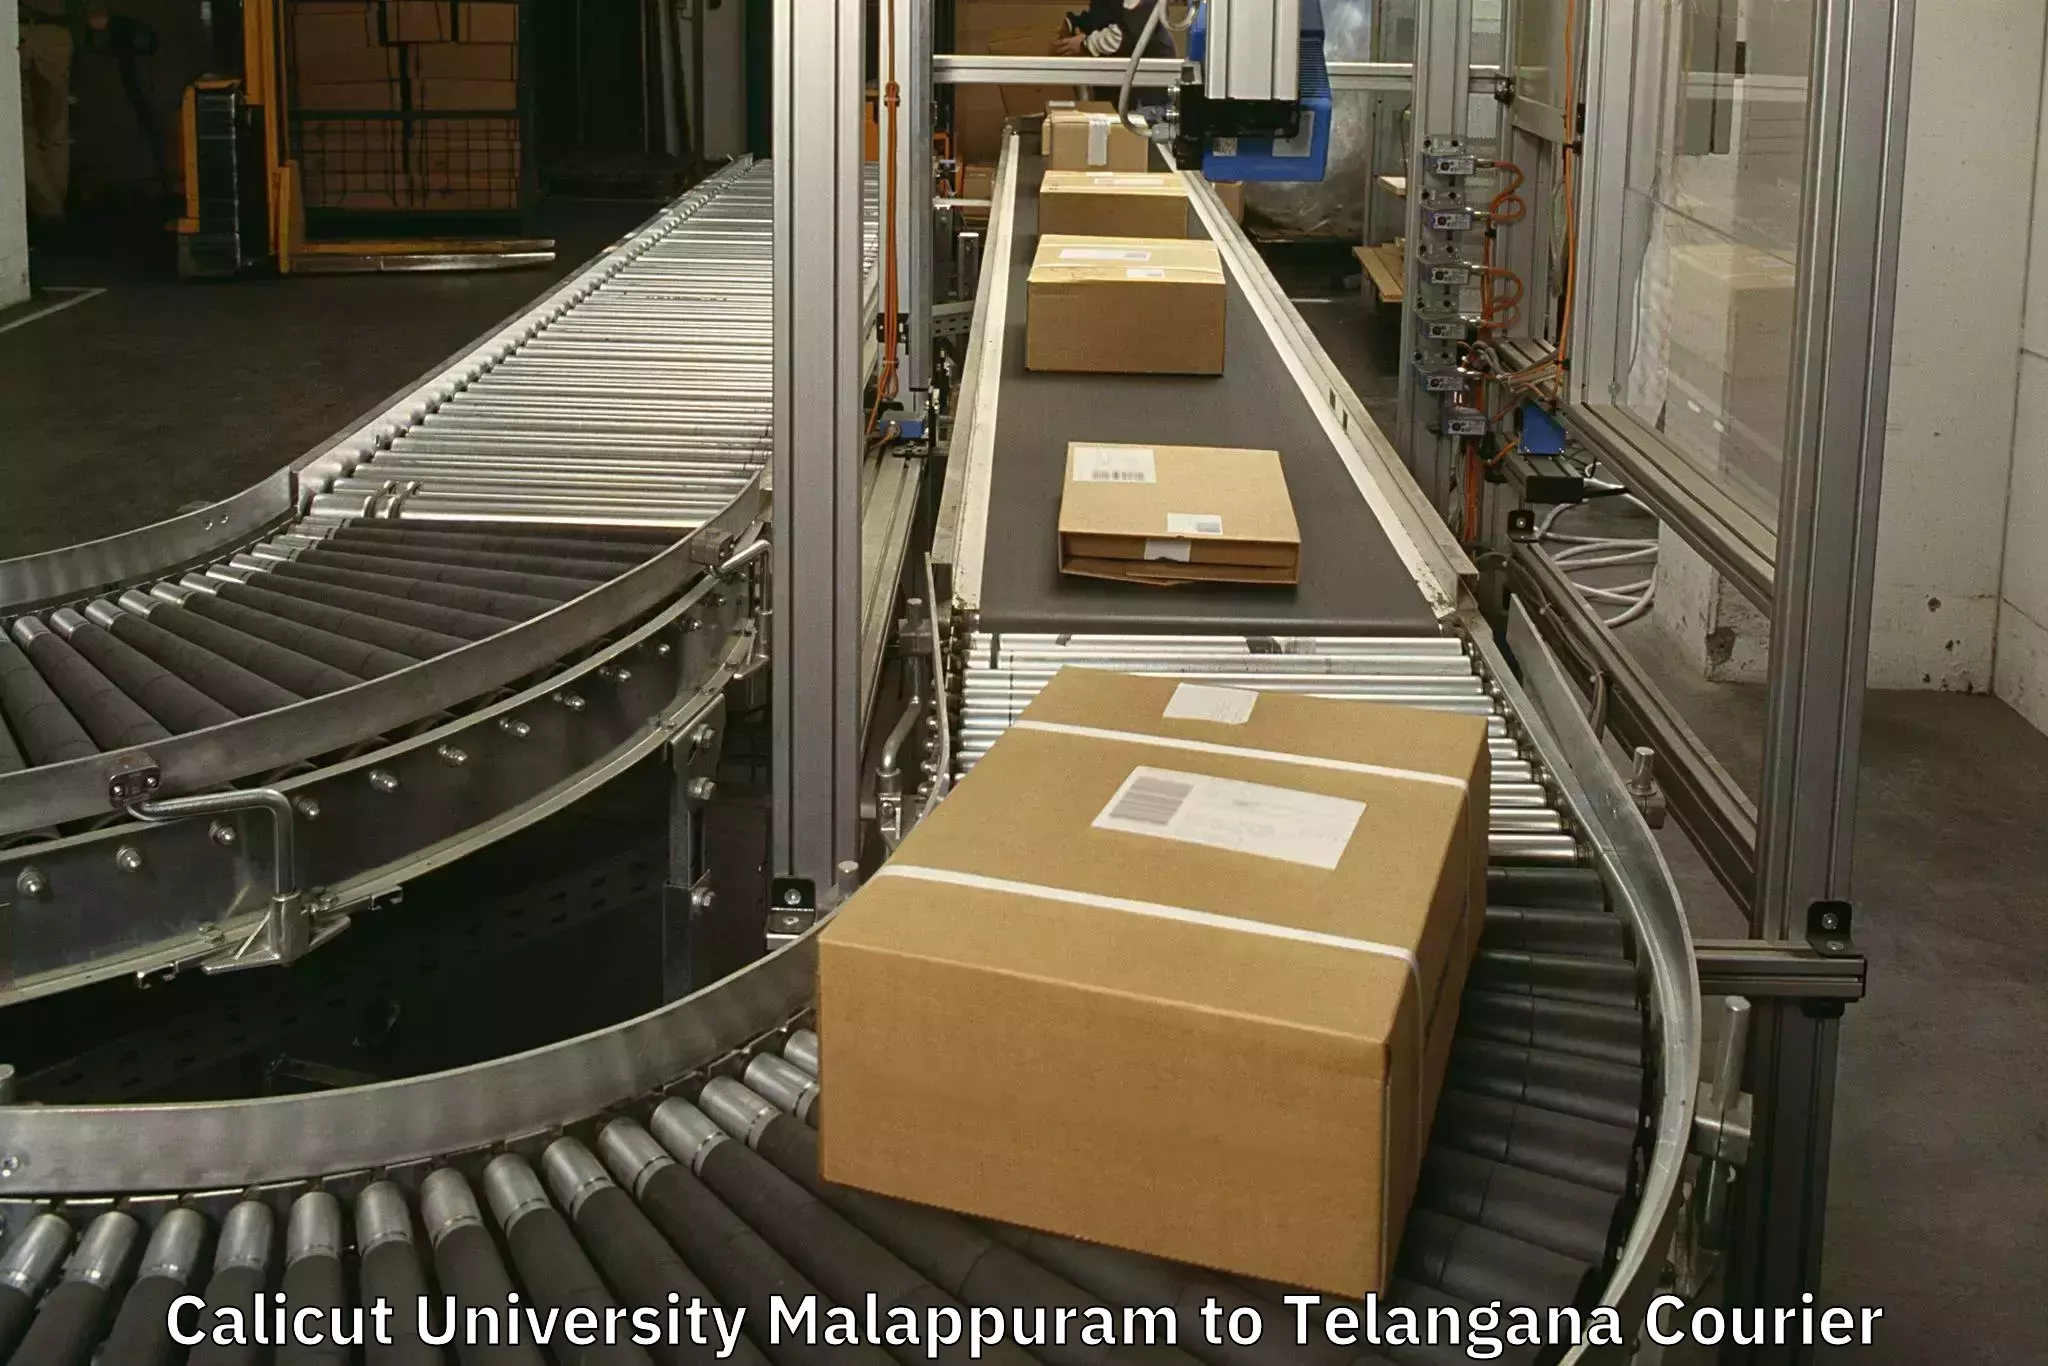 Luggage shipment specialists Calicut University Malappuram to Amangal